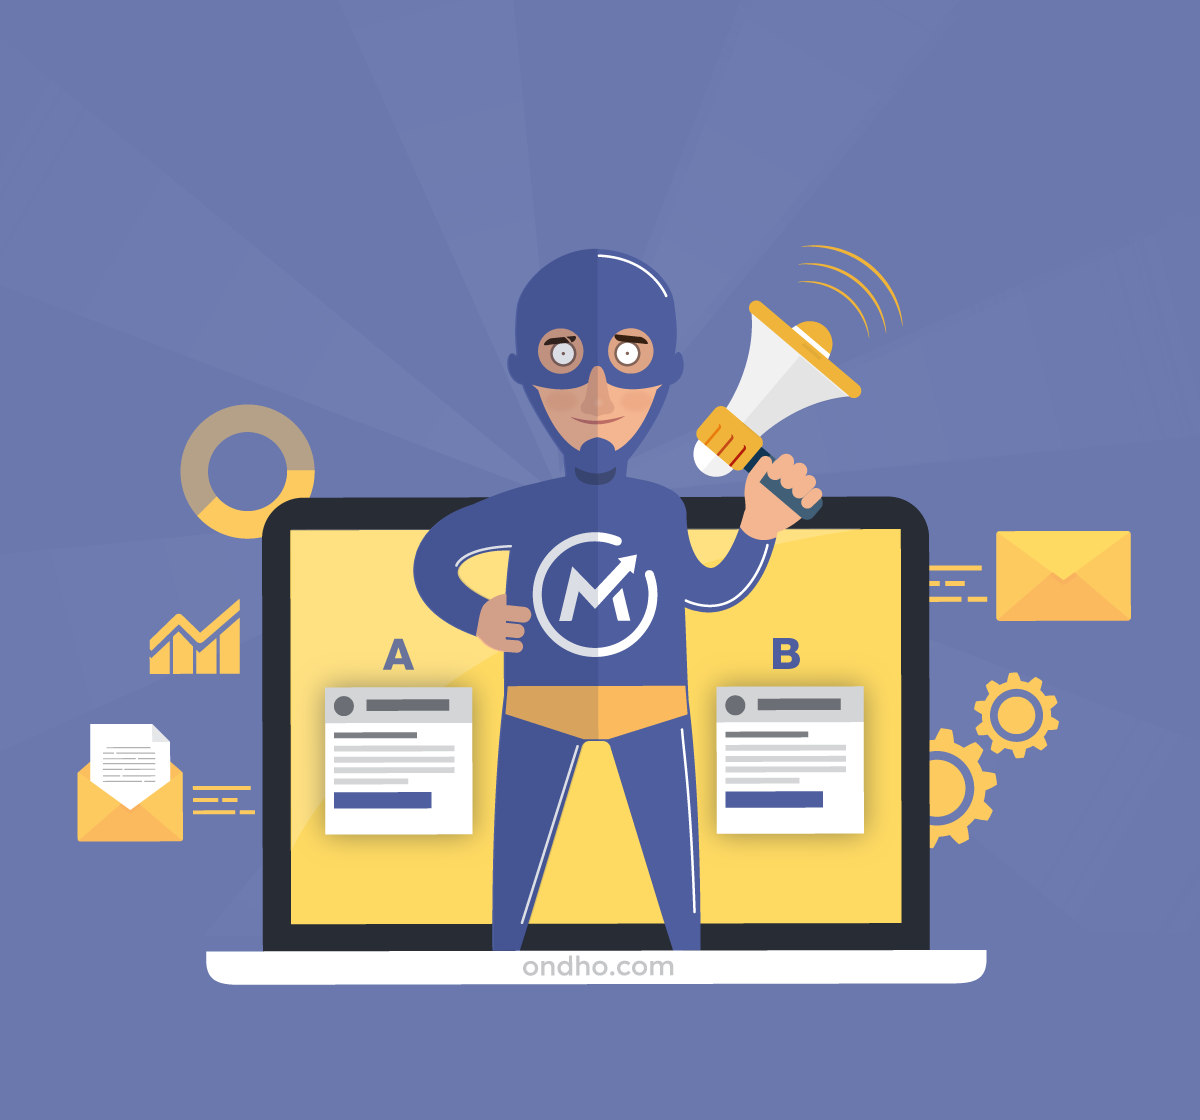 Mautic, la herramienta Open Source para la automatización del marketing digital